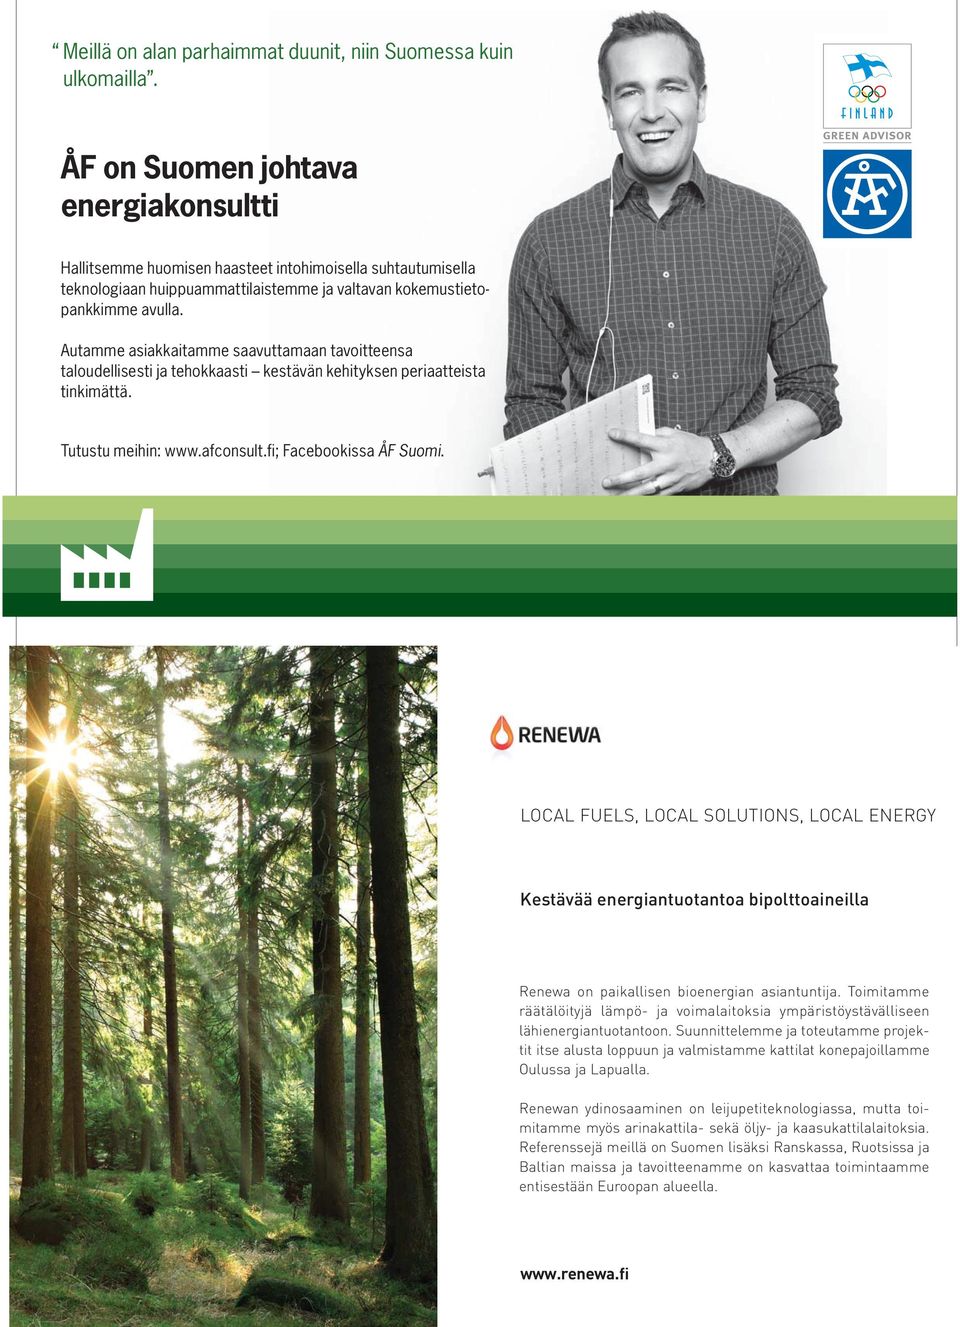 Autamme asiakkaitamme saavuttamaan tavoitteensa taloudellisesti ja tehokkaasti kestävän kehityksen periaatteista tinkimättä. Tutustu meihin: www.afconsult.fi; Facebookissa ÅF Suomi.